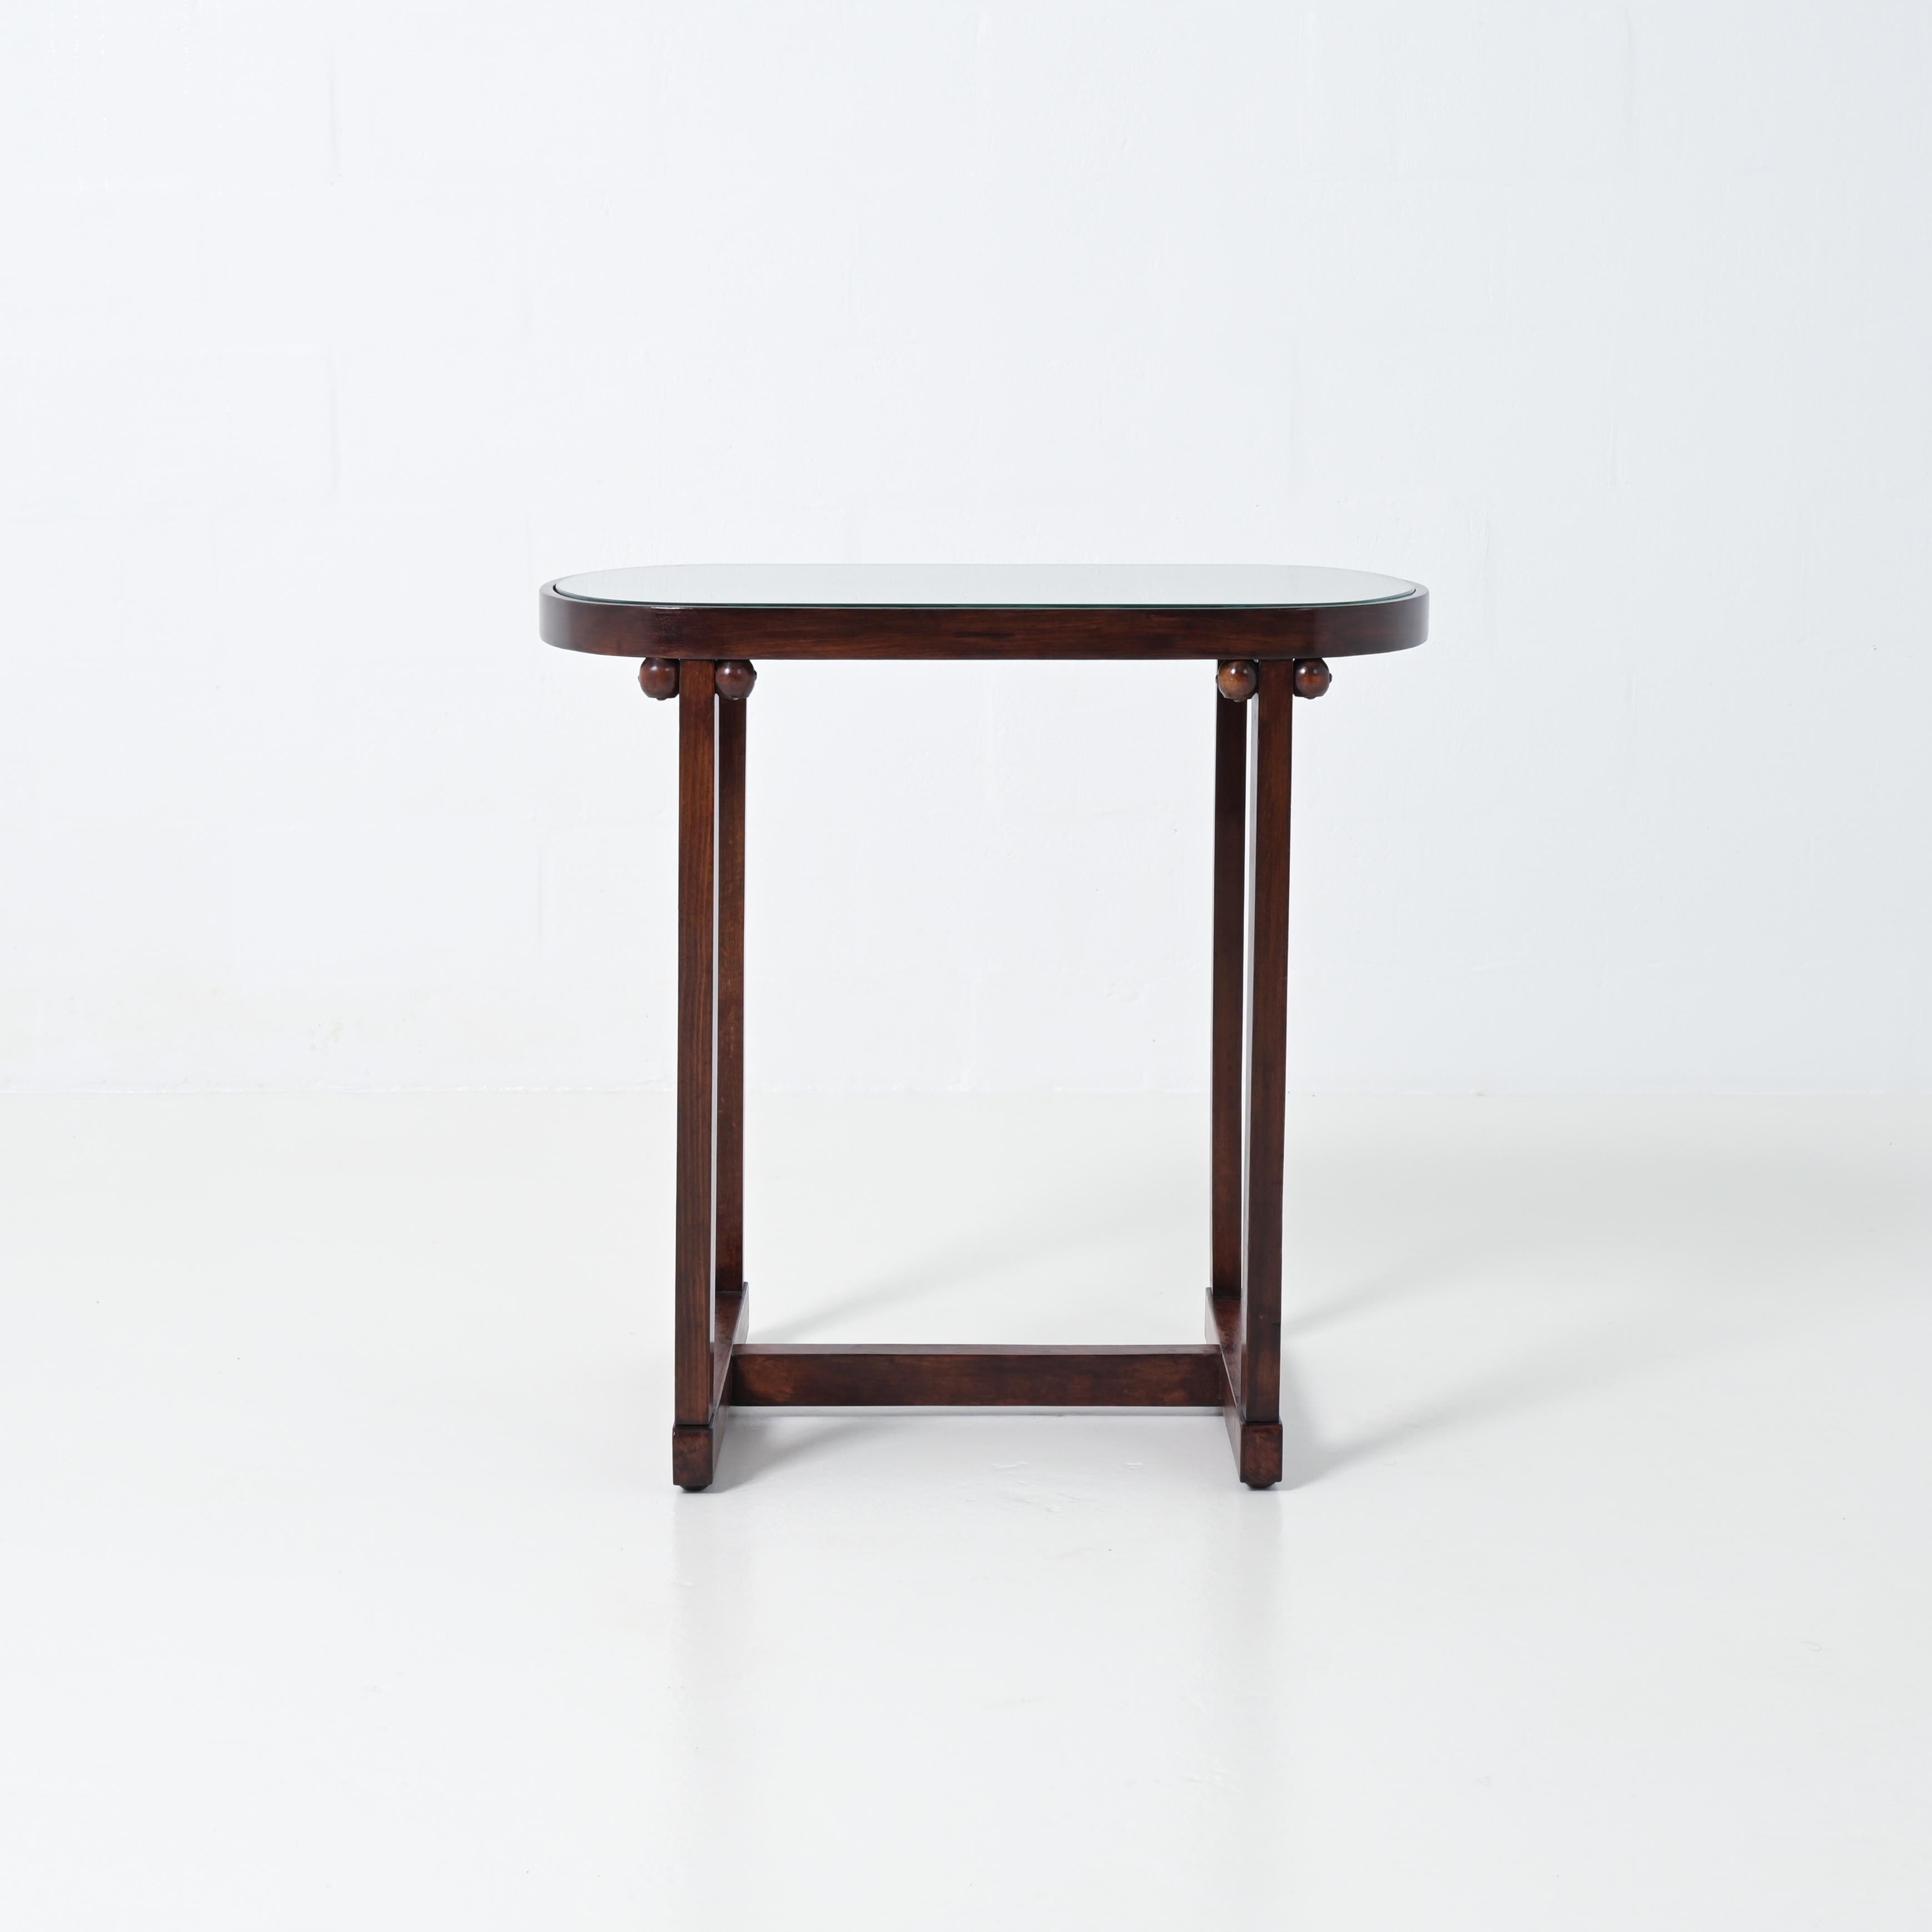 Josef Hoffmann vanity table by J. & J. Kohn For Sale 2